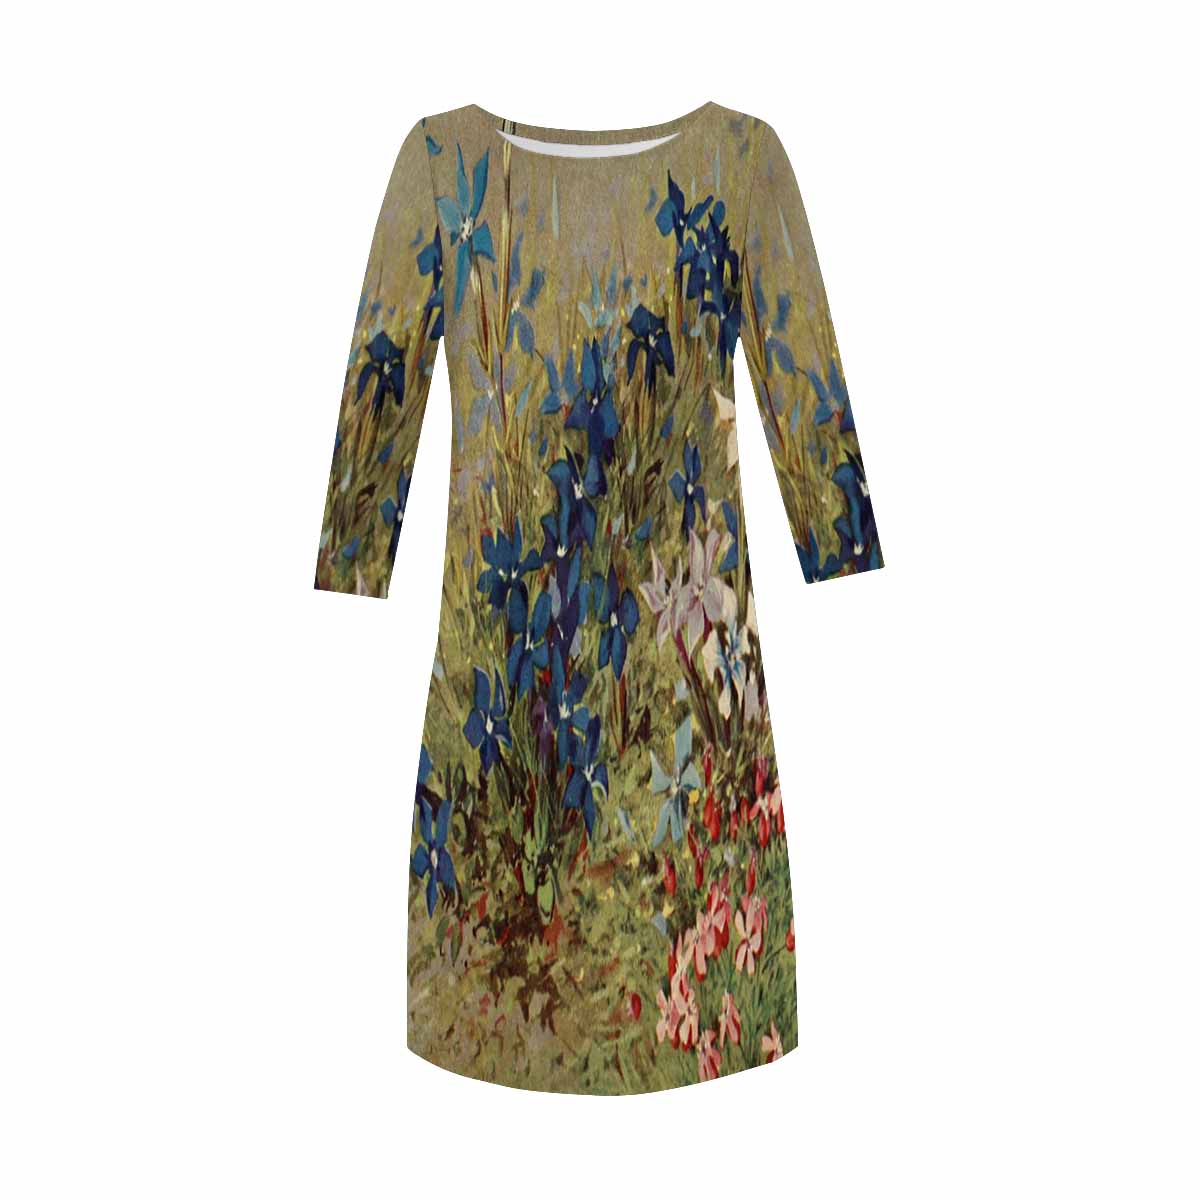 Vintage floral loose dress, model D29532 Design 39